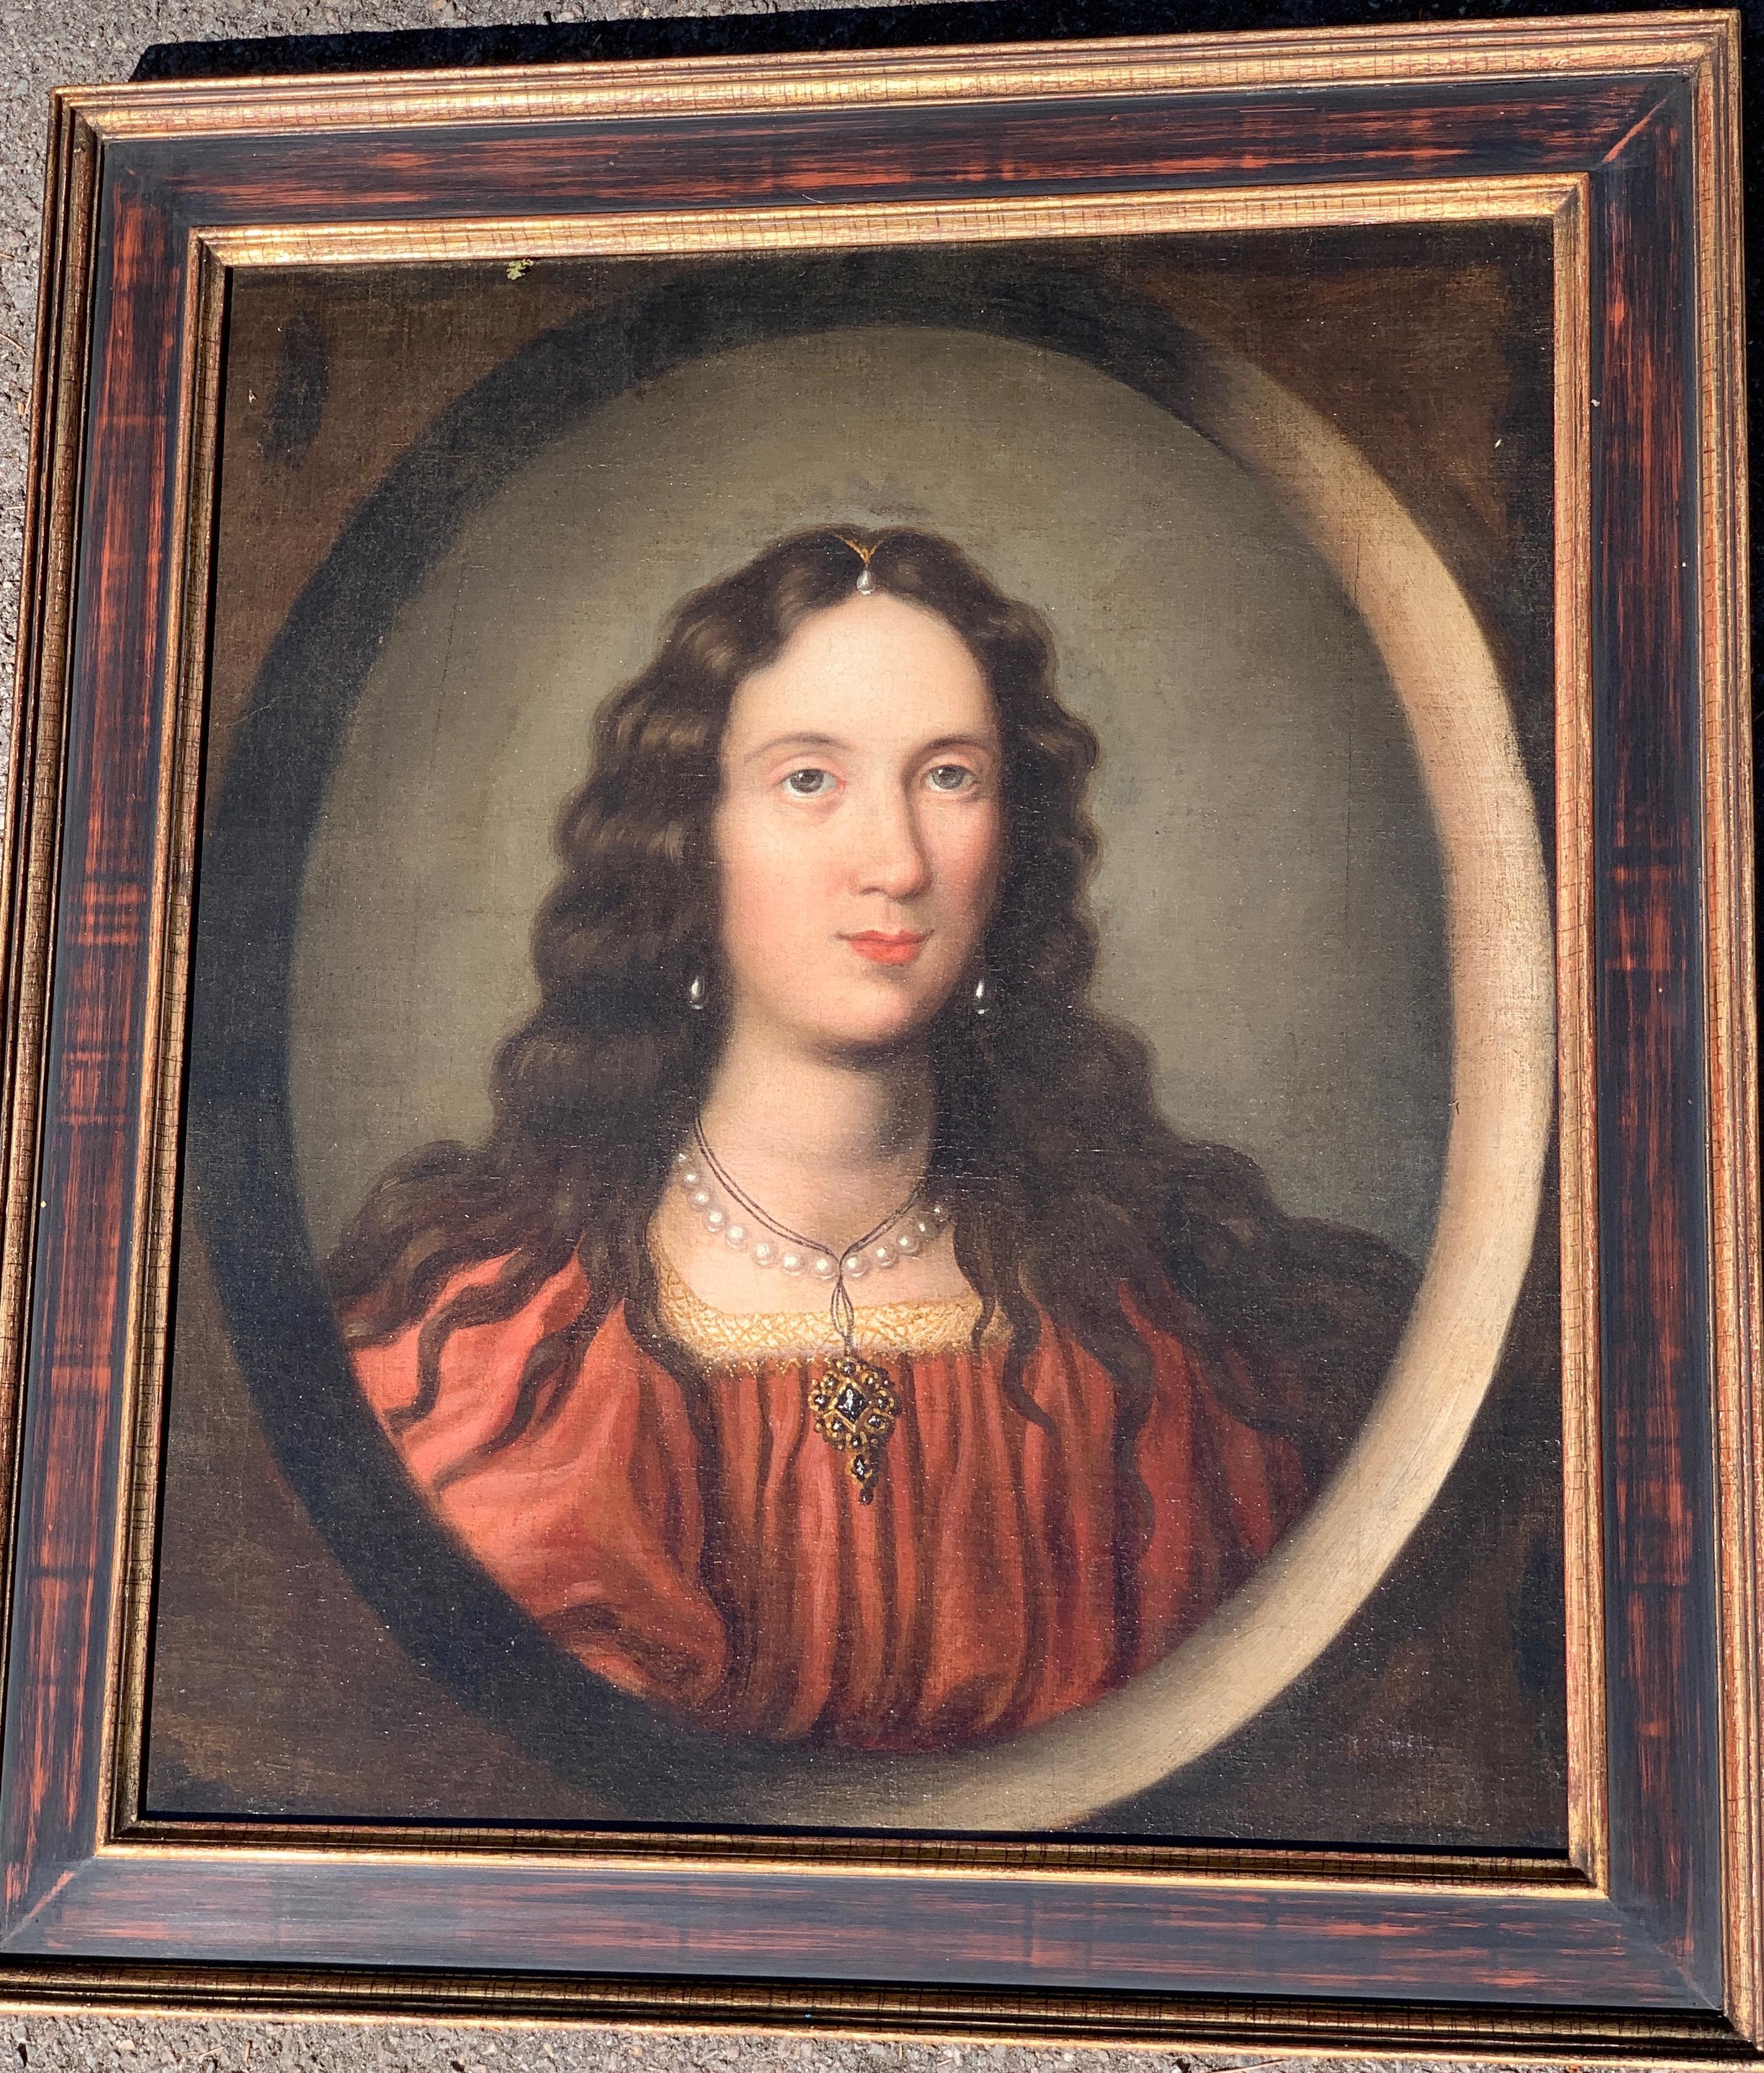 Unknown Portrait Painting – Altes italienisches Meisterporträt eines jungen Mädchens aus dem 17. Jahrhundert.